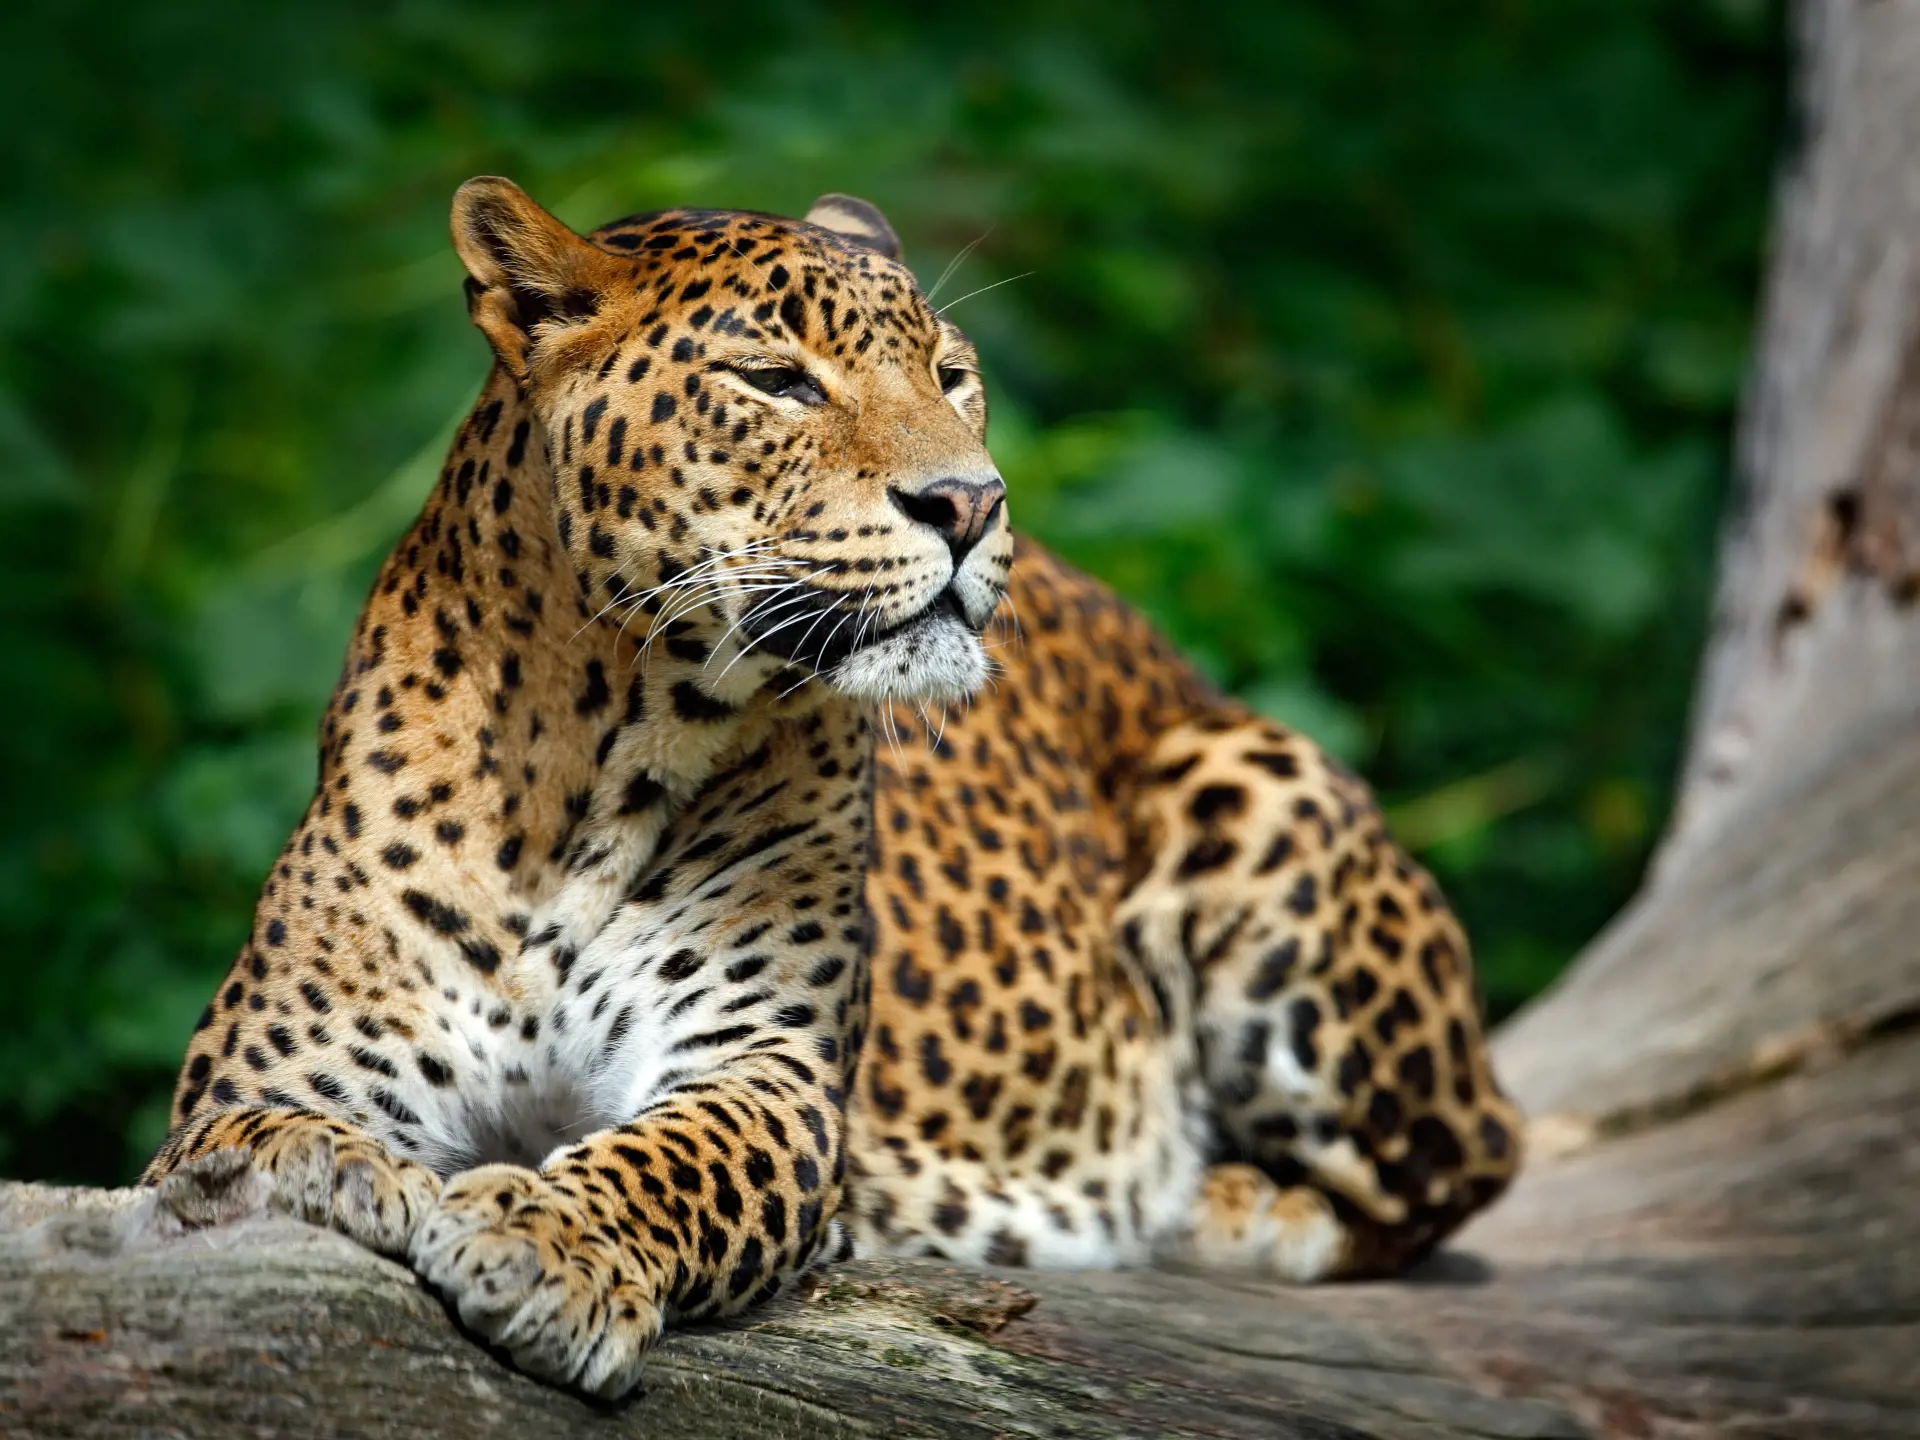 SAFARI - I Yala National Park kan I komme på jeepsafari og - måske - se leoparder.